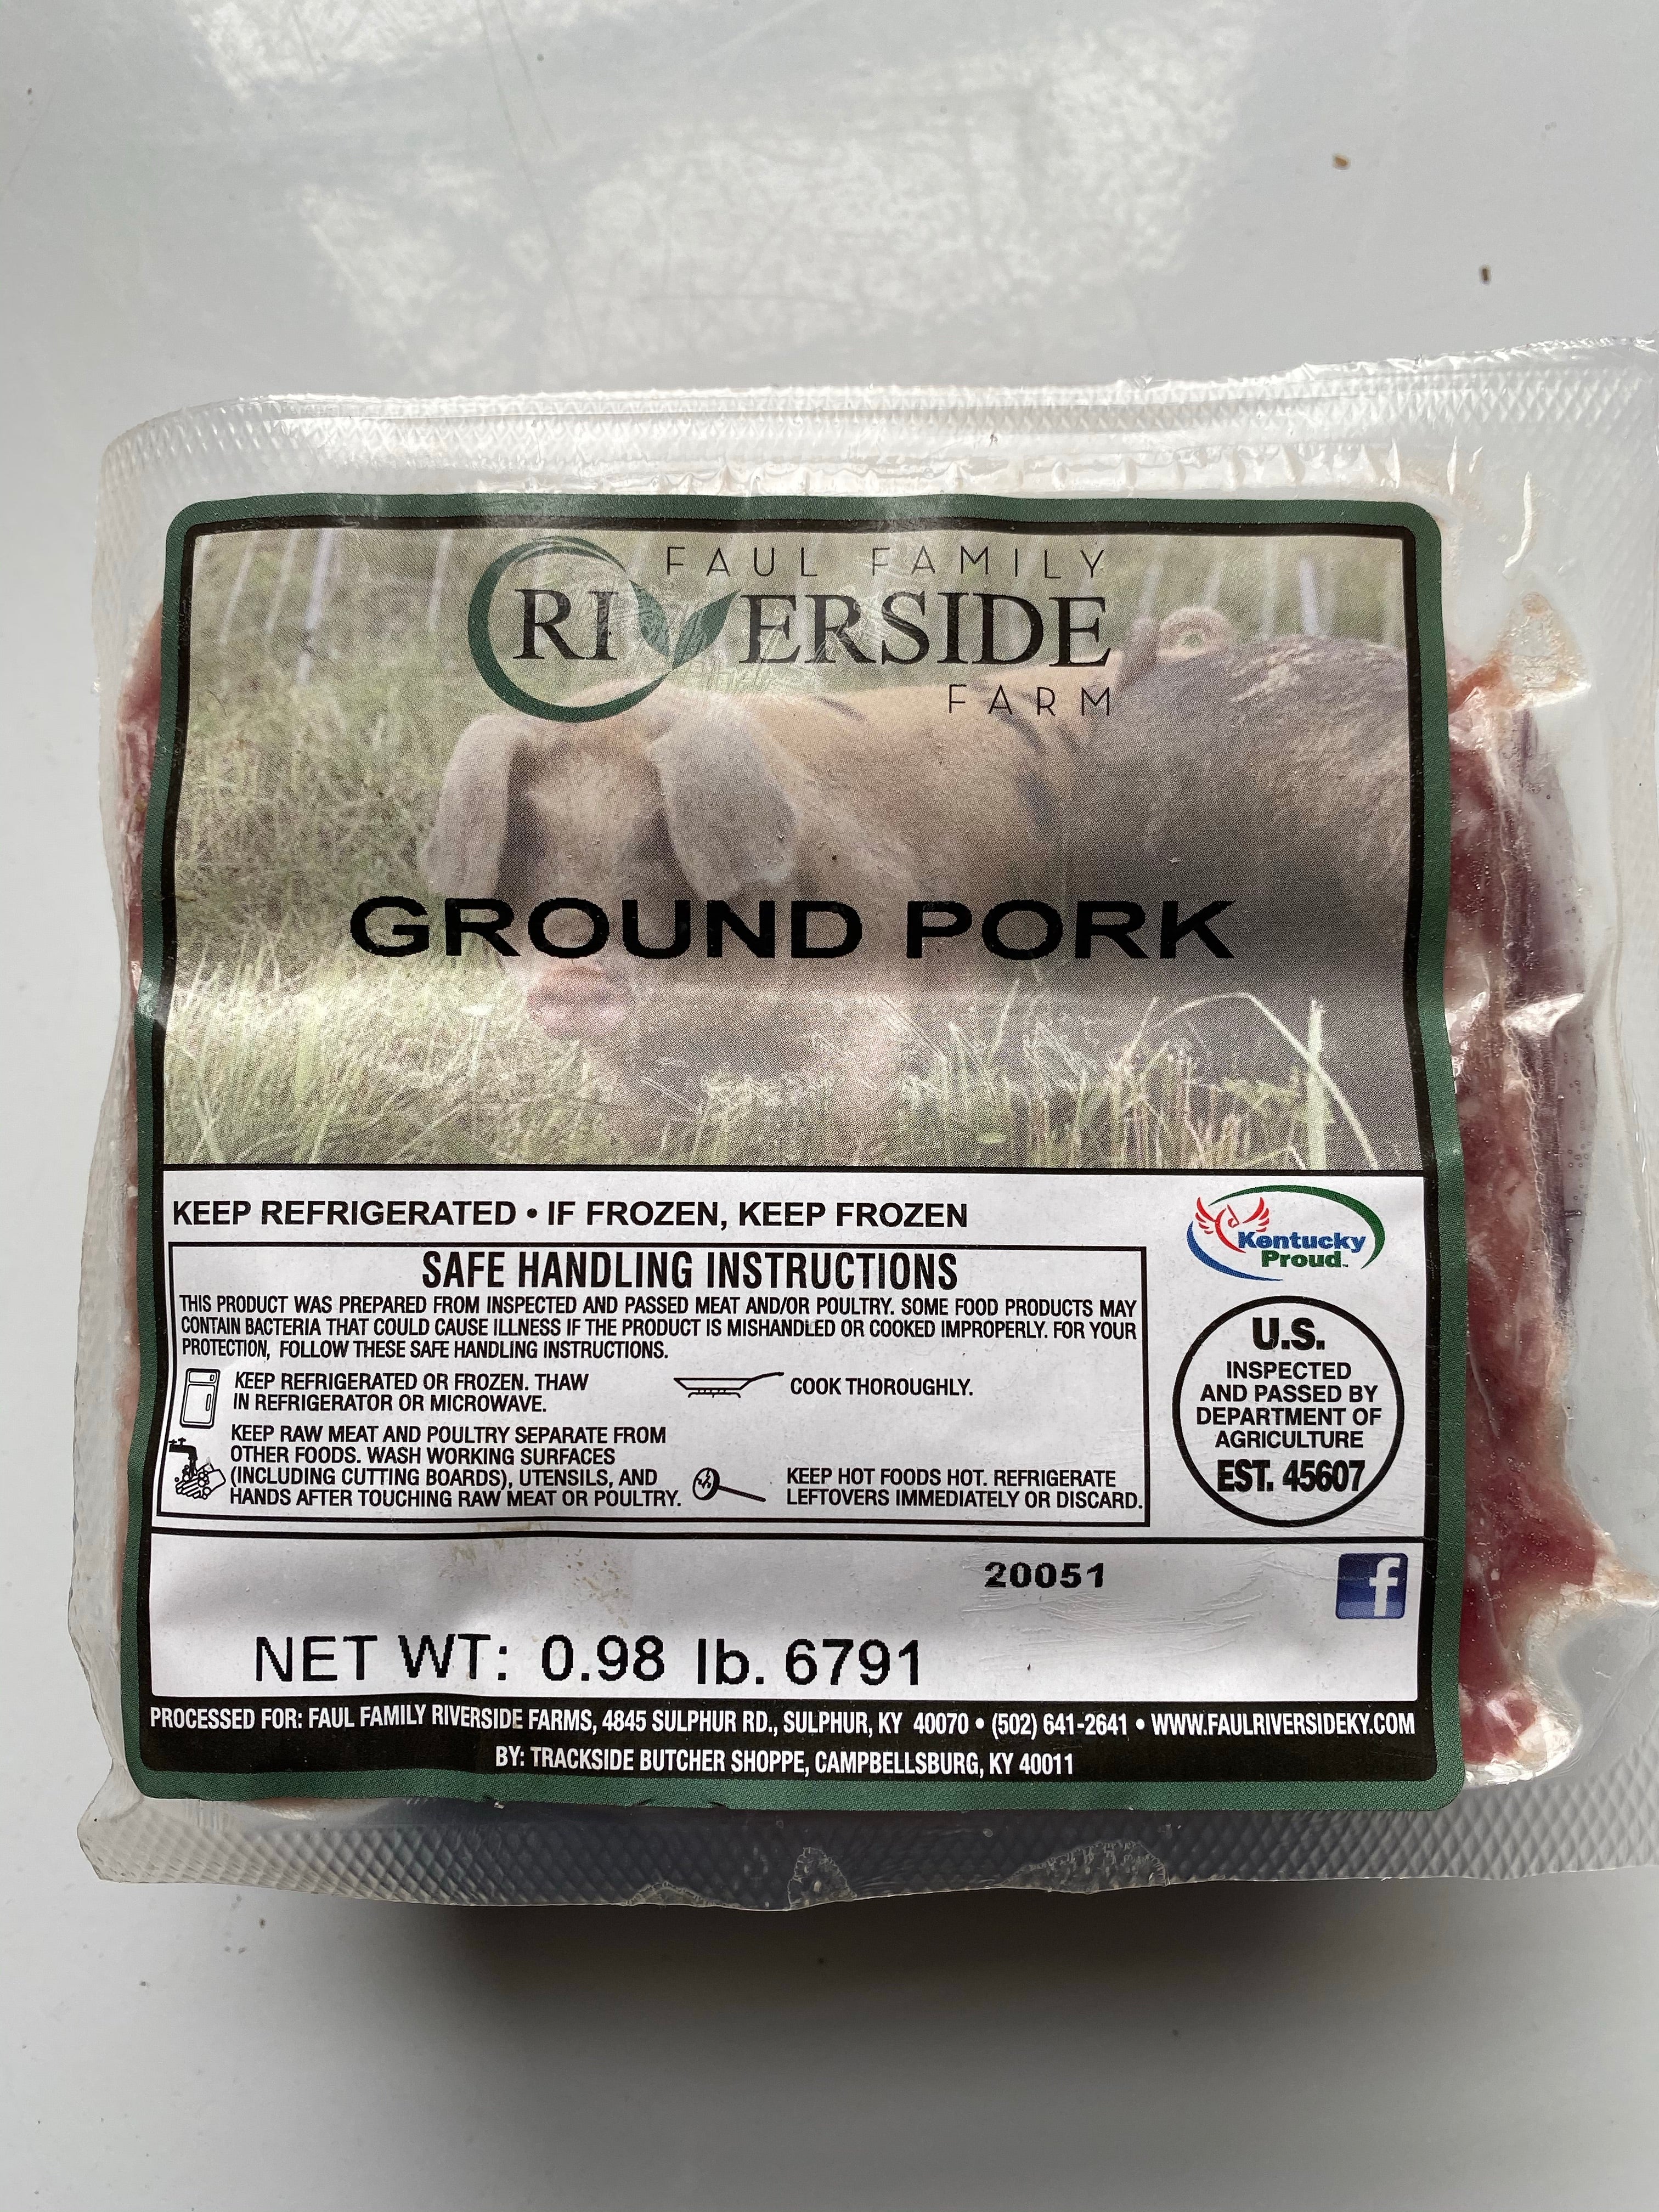 Bulk Ground Pork Special – Faul Family Riverside Farm